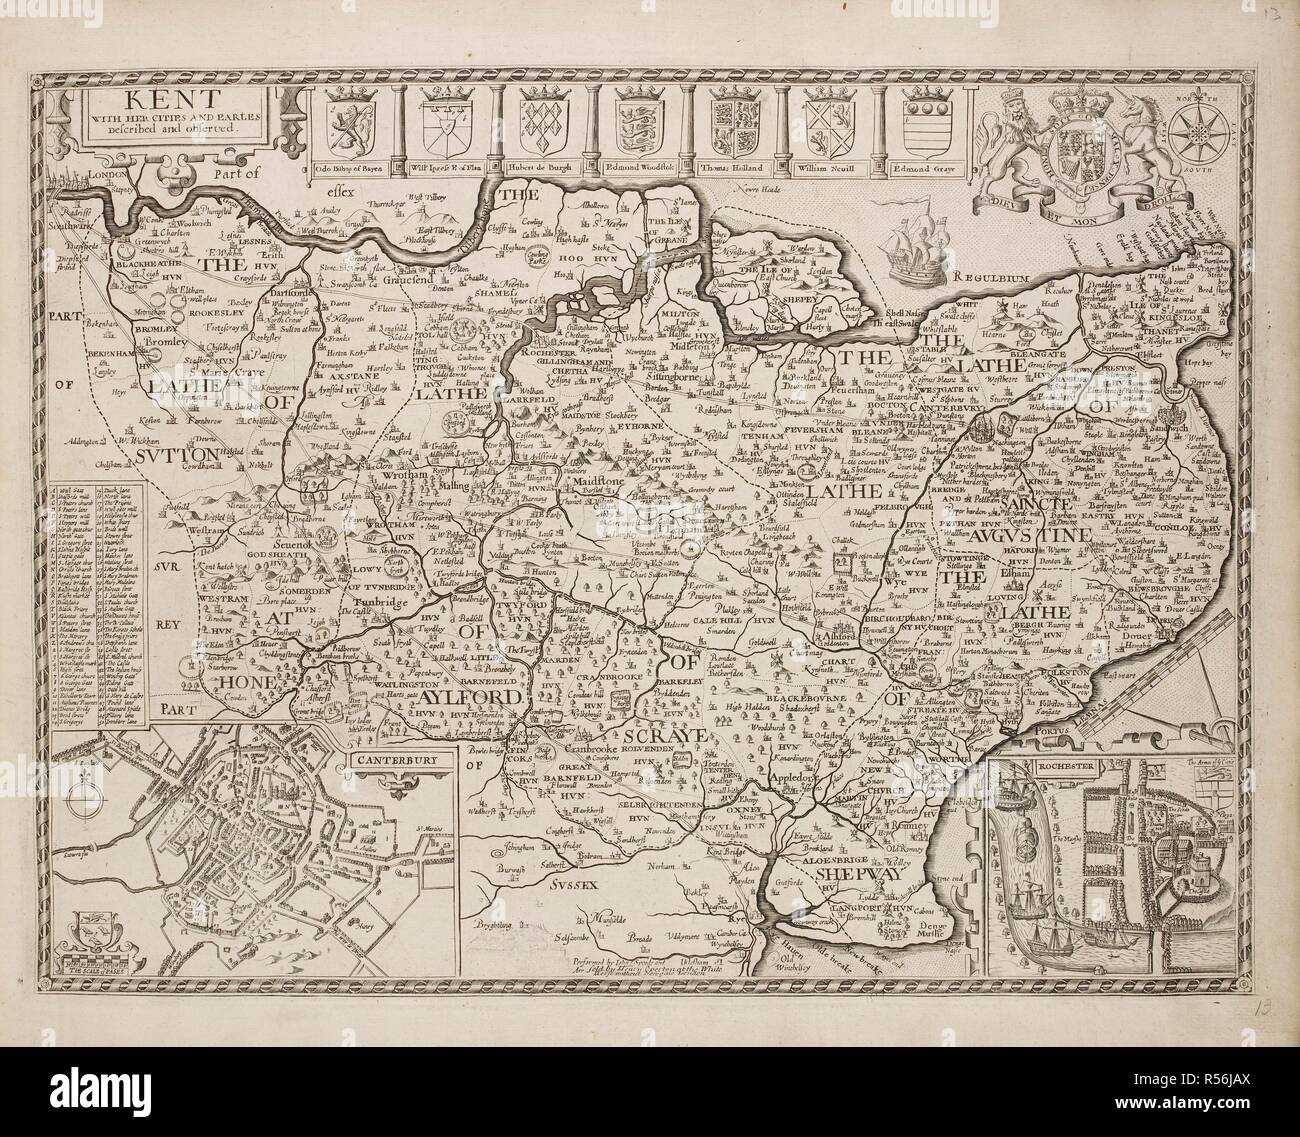 Un mapa del condado de Kent. Publicado en 1714. Los escudos de las familias del condado. . Una colección de 37 mapas de los condados de Inglaterra. Londres. H. Overton, 1714. Una colección de 37 mapas de los condados de Inglaterra, siendo las reimpresiones, de J. Speedâ€™s mapas, por Henry Overton, junto con los de P. Stent Reimpreso por John Overton, y mapas de Derbyshire y Yorkshire grabado por S. Nicholls. Fuente: Maps.145.c.9 13. Idioma: Inglés. Foto de stock